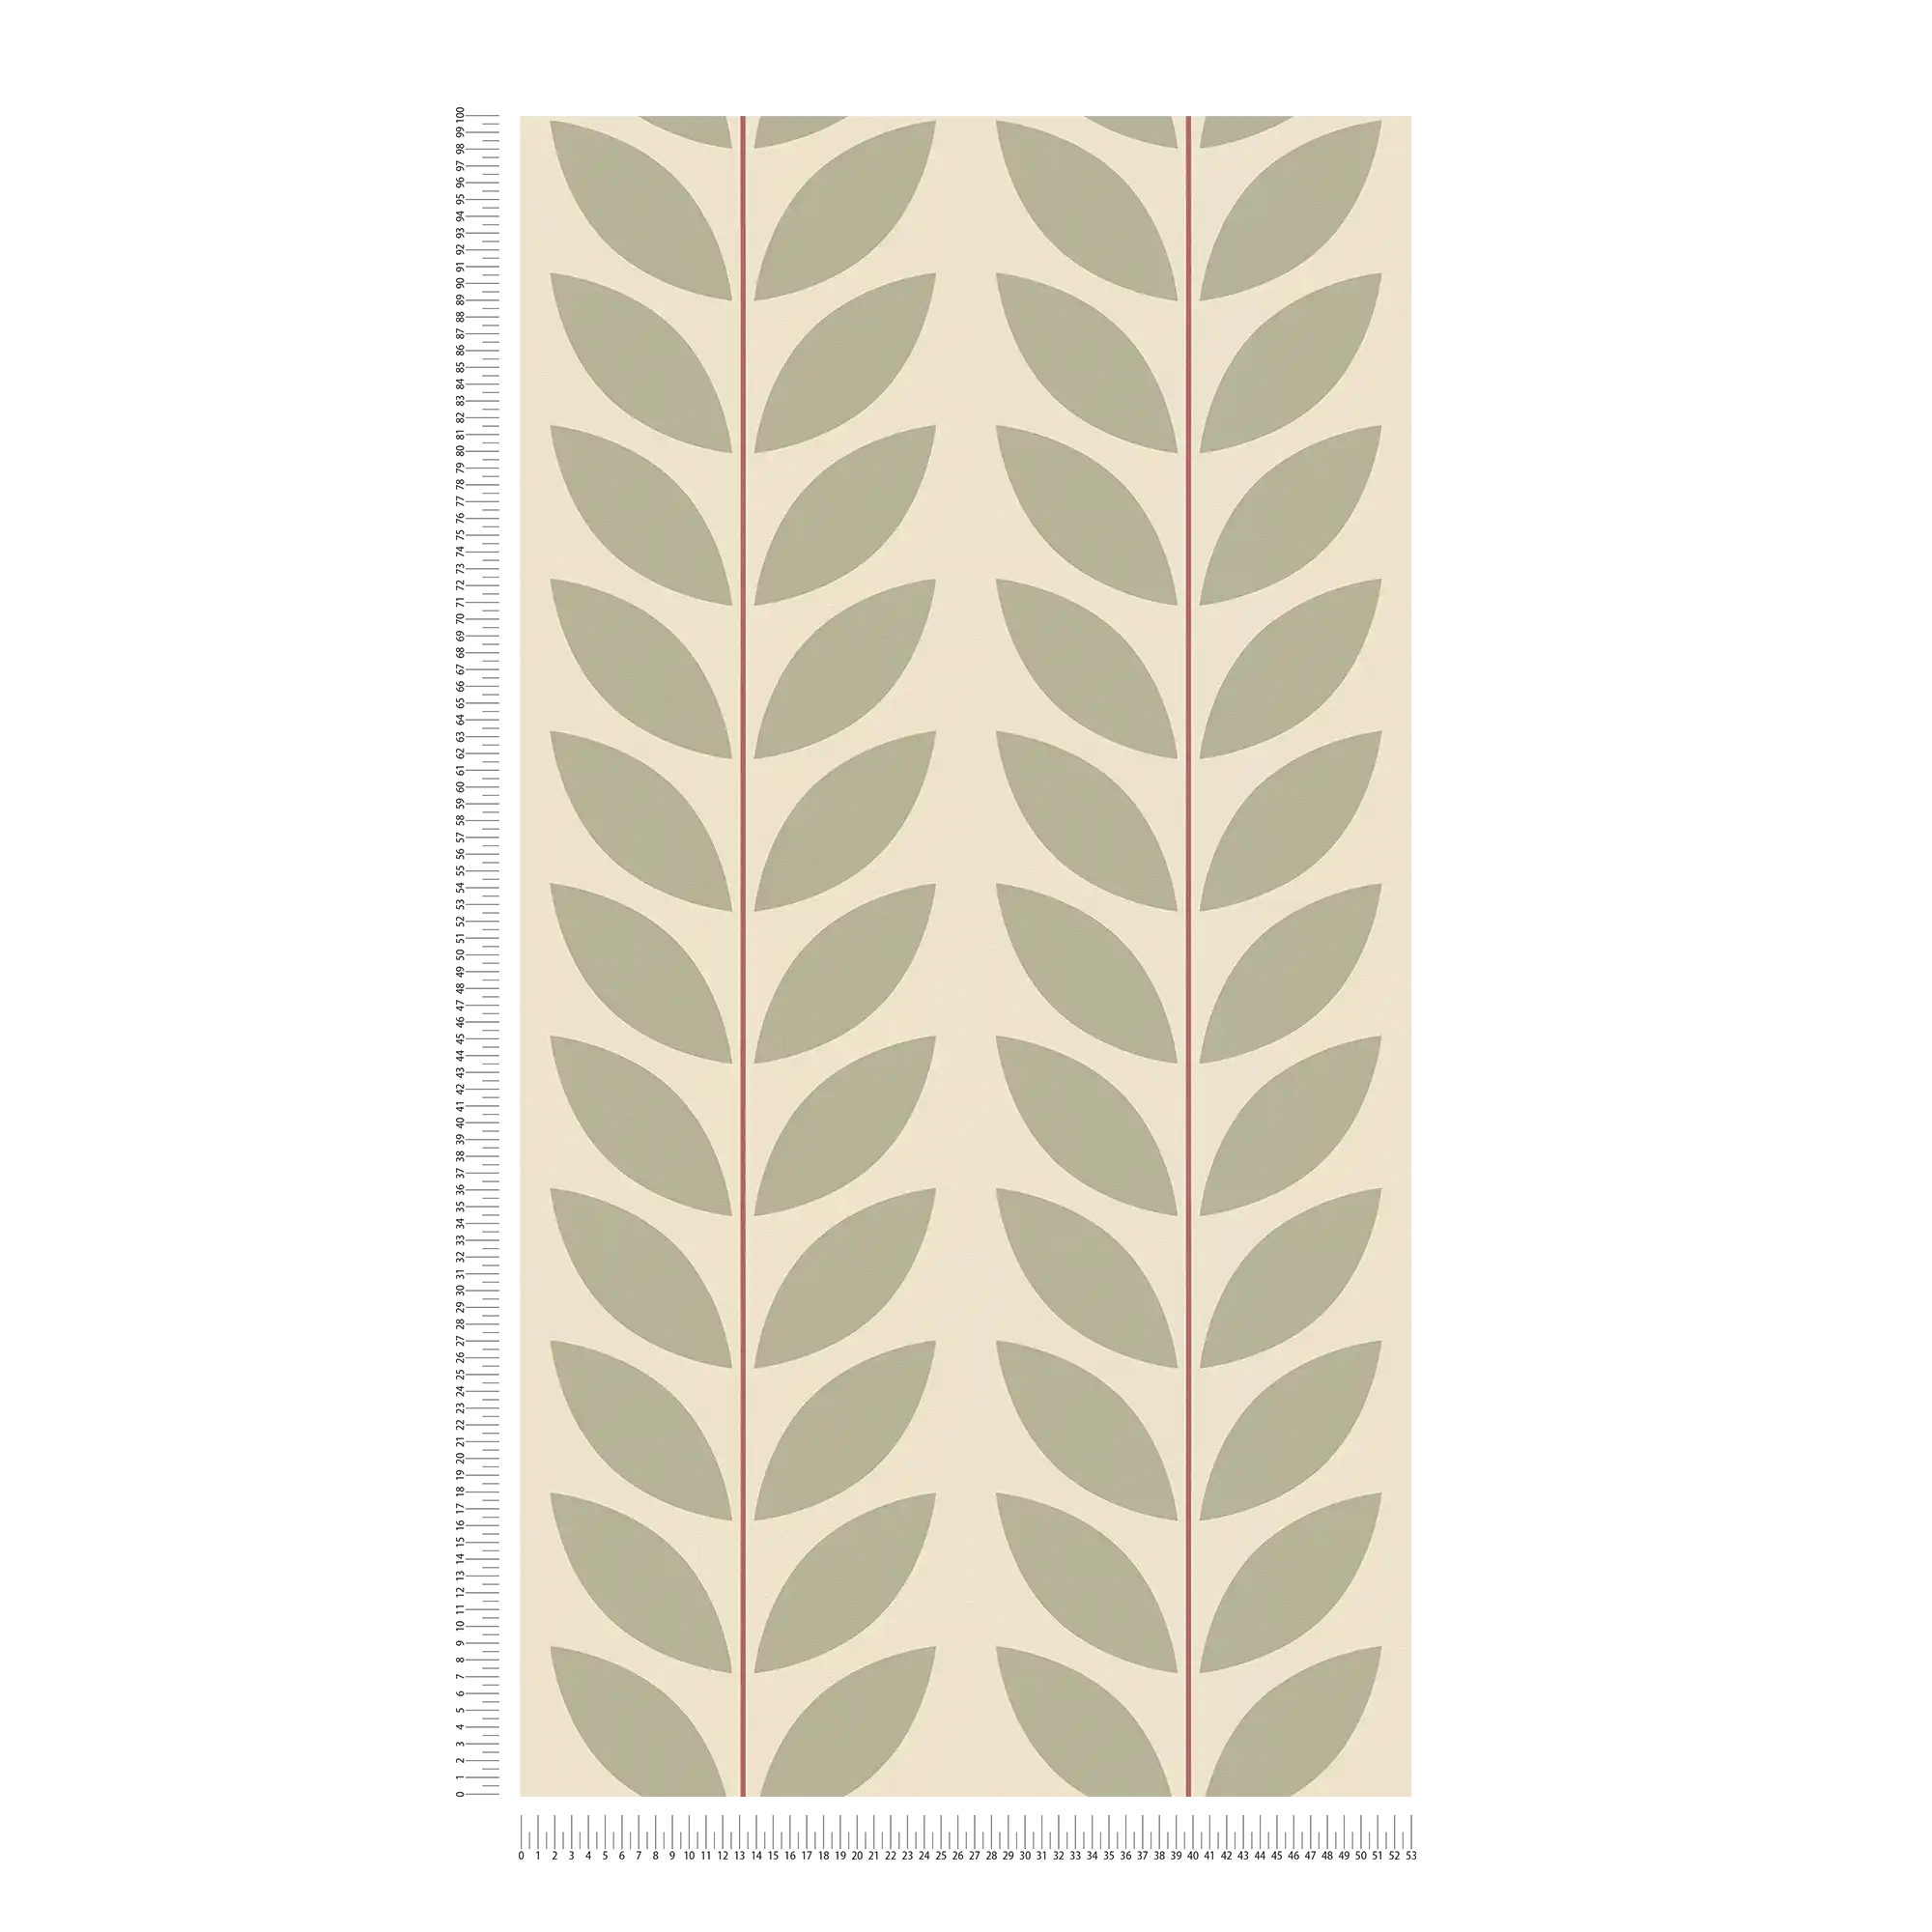             Papel pintado tejido-no tejido con motivo de hojas en estilo retro - beige, verde, rojo
        